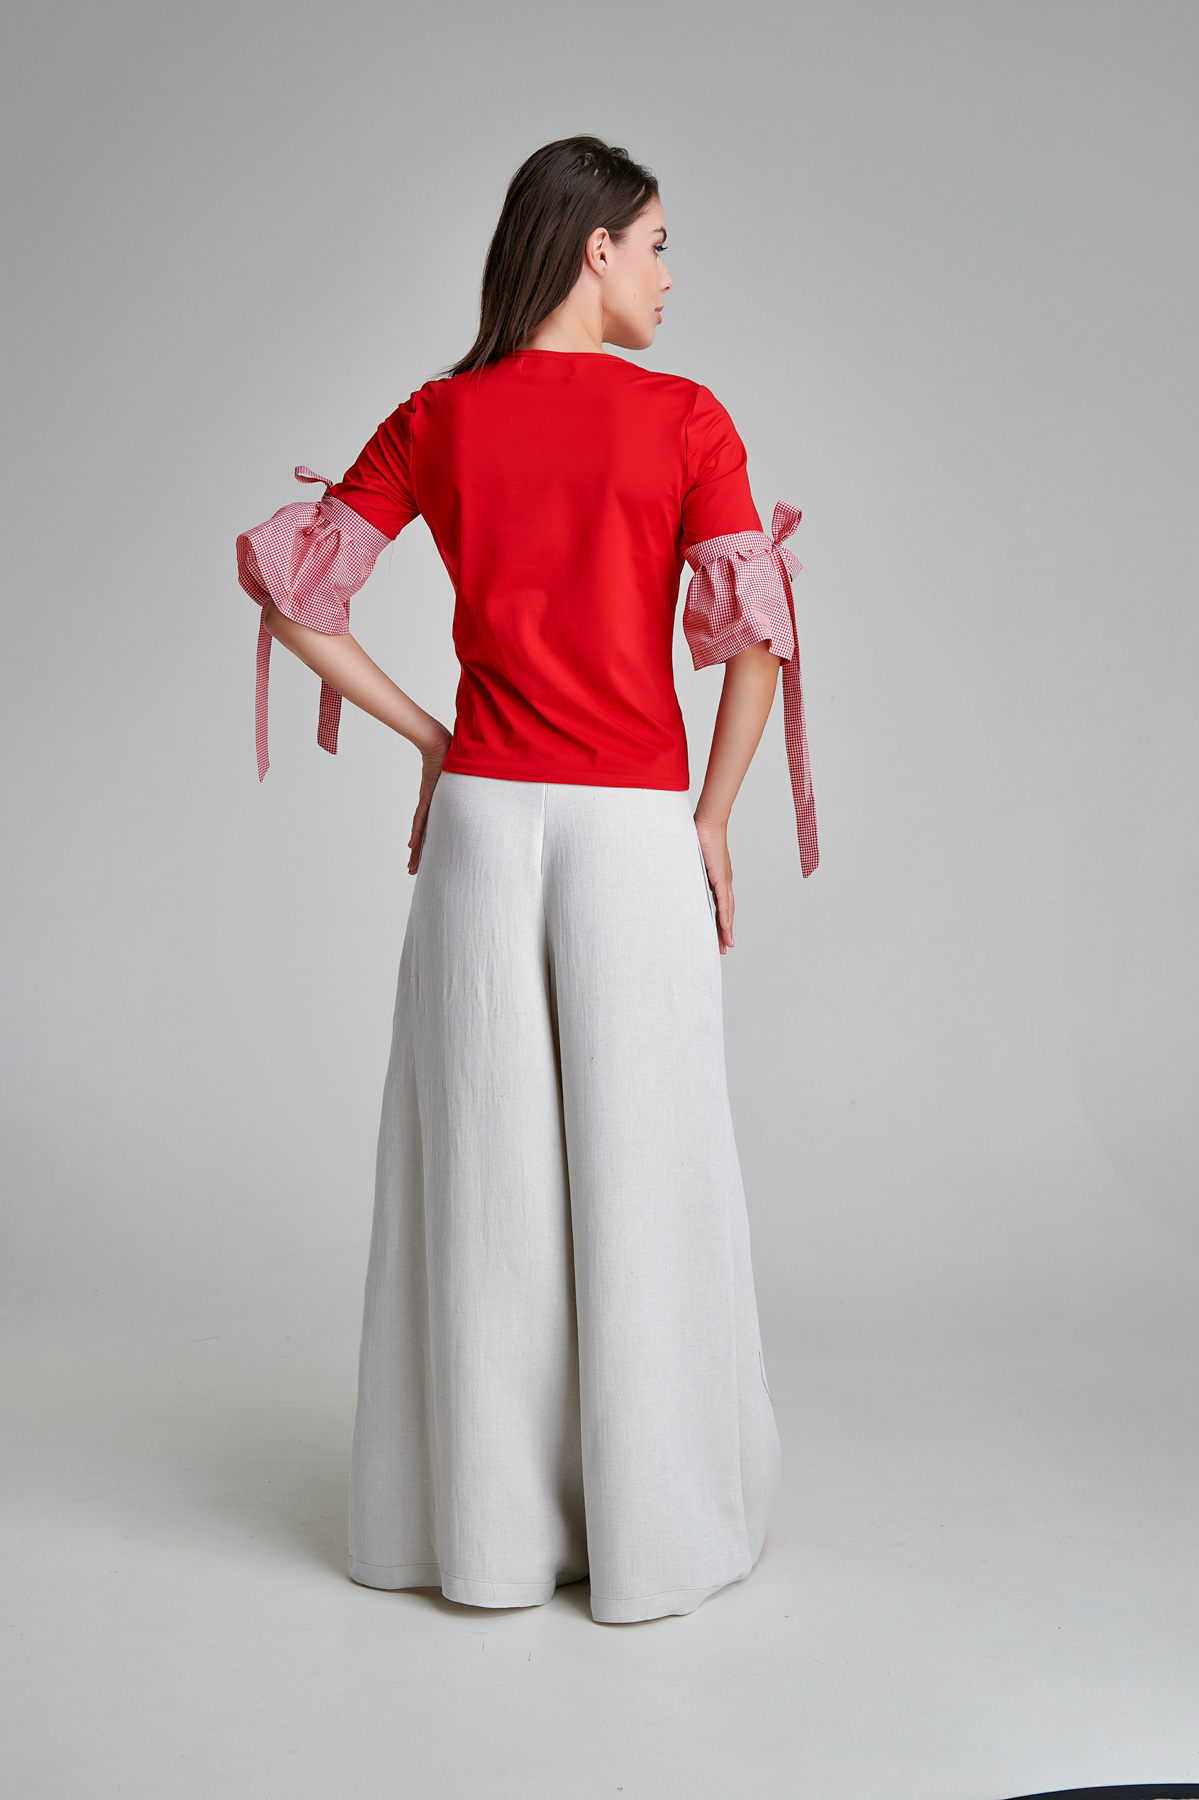 Bluza casual FAVI rosie cu mansete din bumbac. Materiale naturale, design unicat, cu broderie si aplicatii handmade